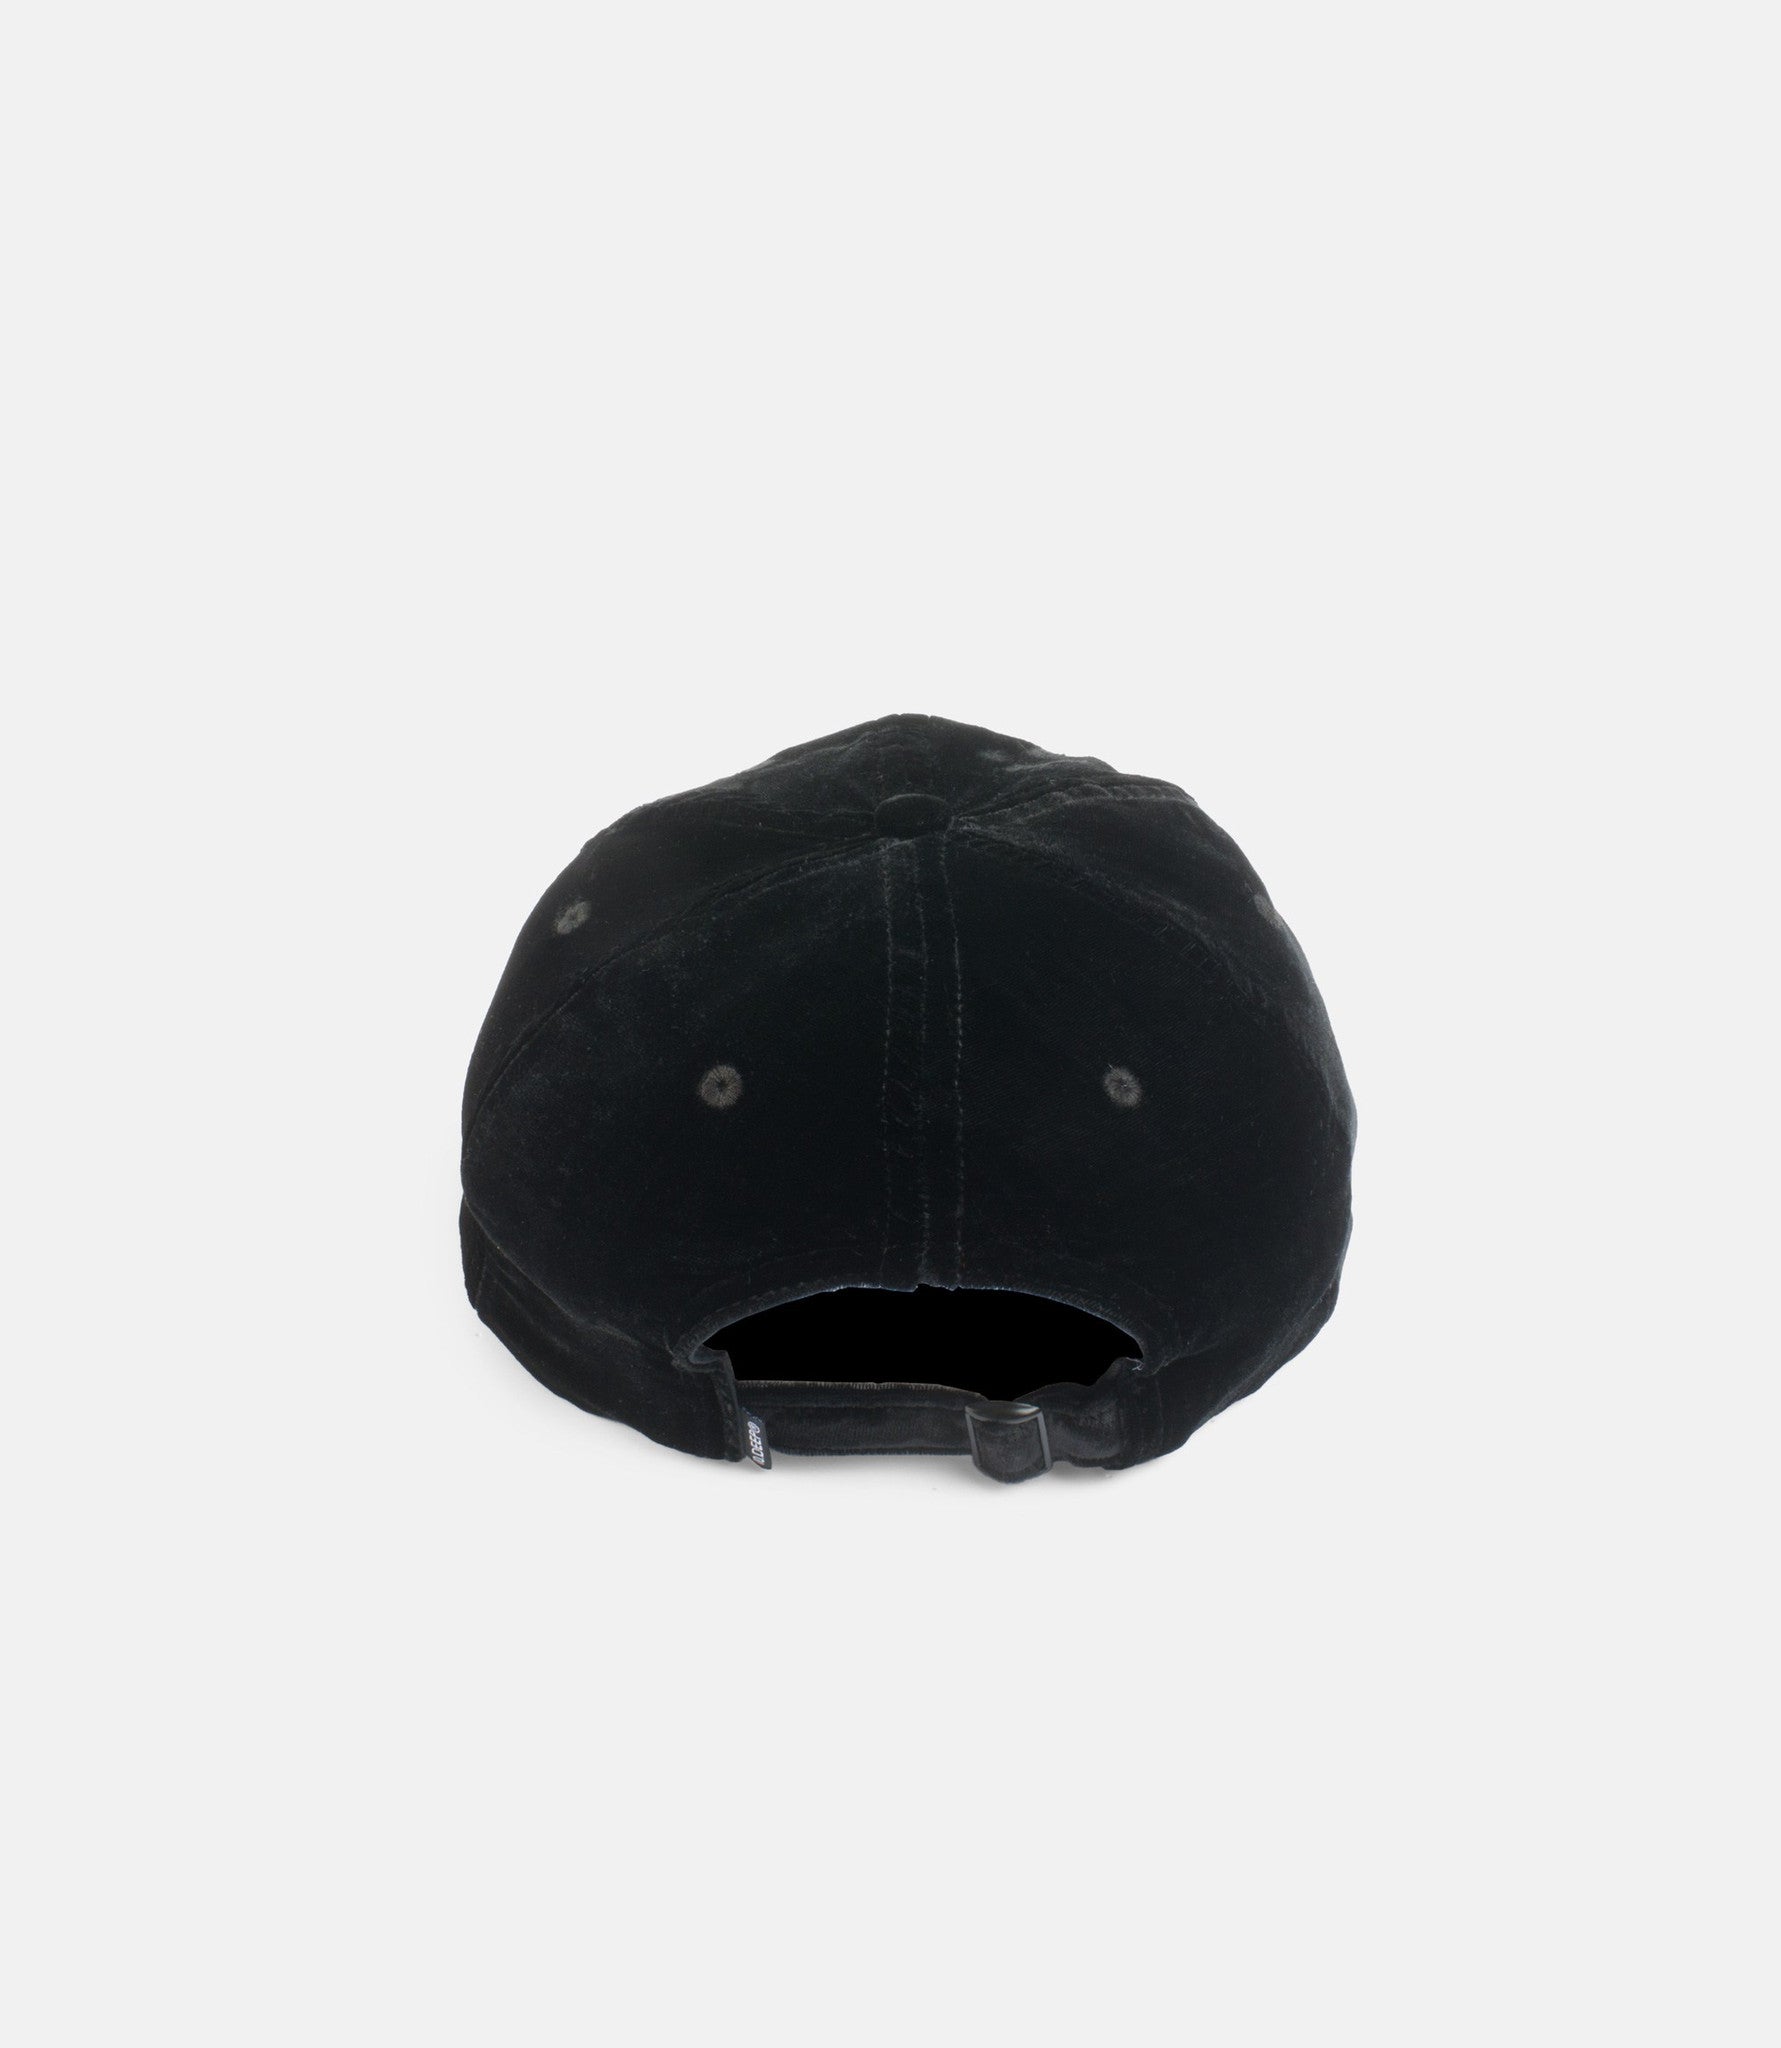 10Deep - Null & Void Roadie Hat, Black - The Giant Peach